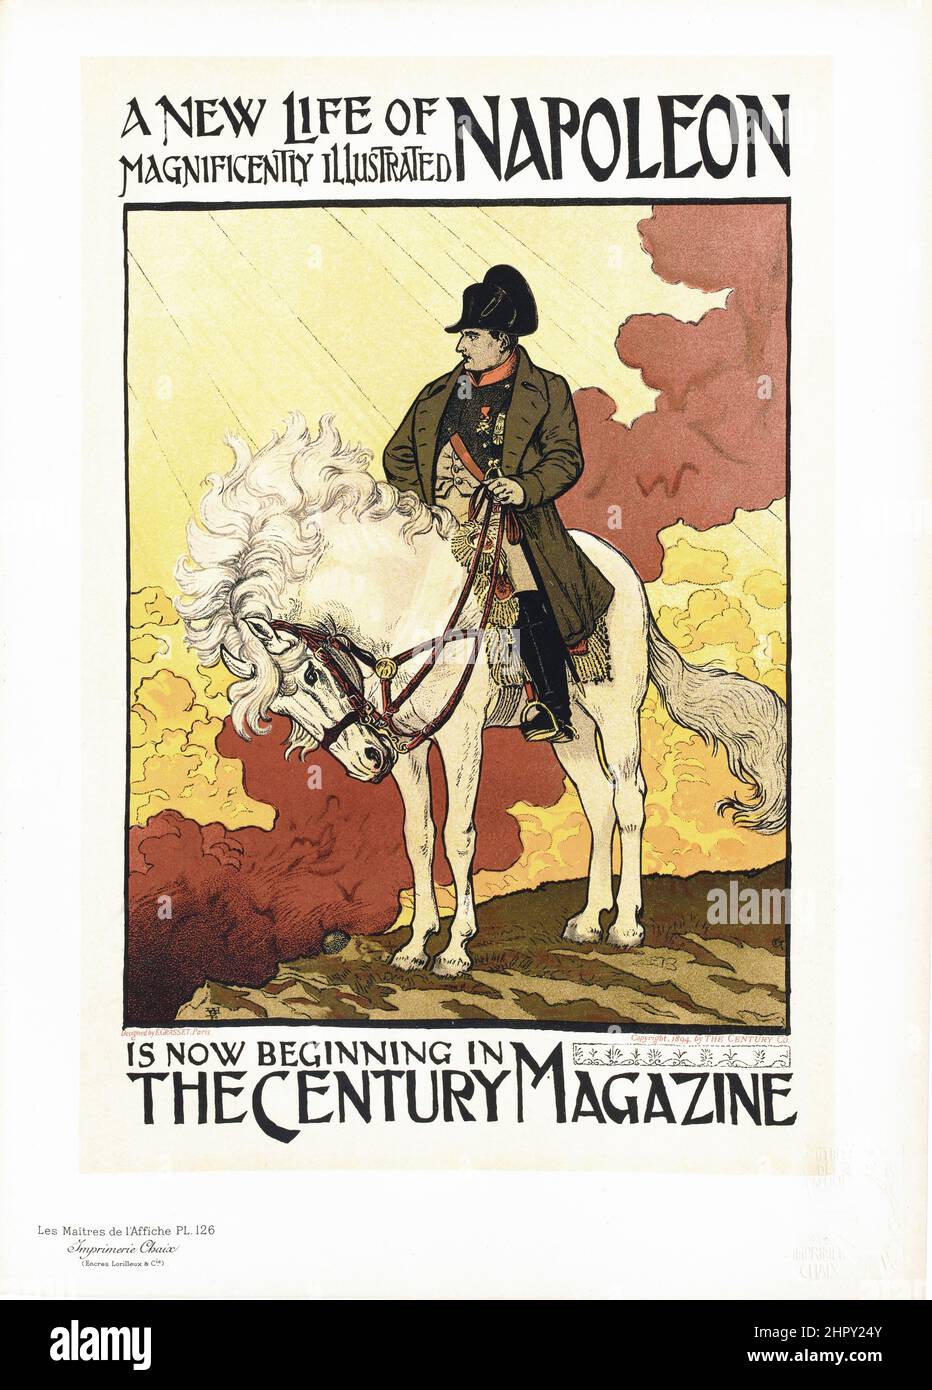 Maitres de l'affiche Vol 3 - Plate 126 - Eugene Grasset - Napoleon - The Century Magazine. Belle époque poster. 1898. Stock Photo